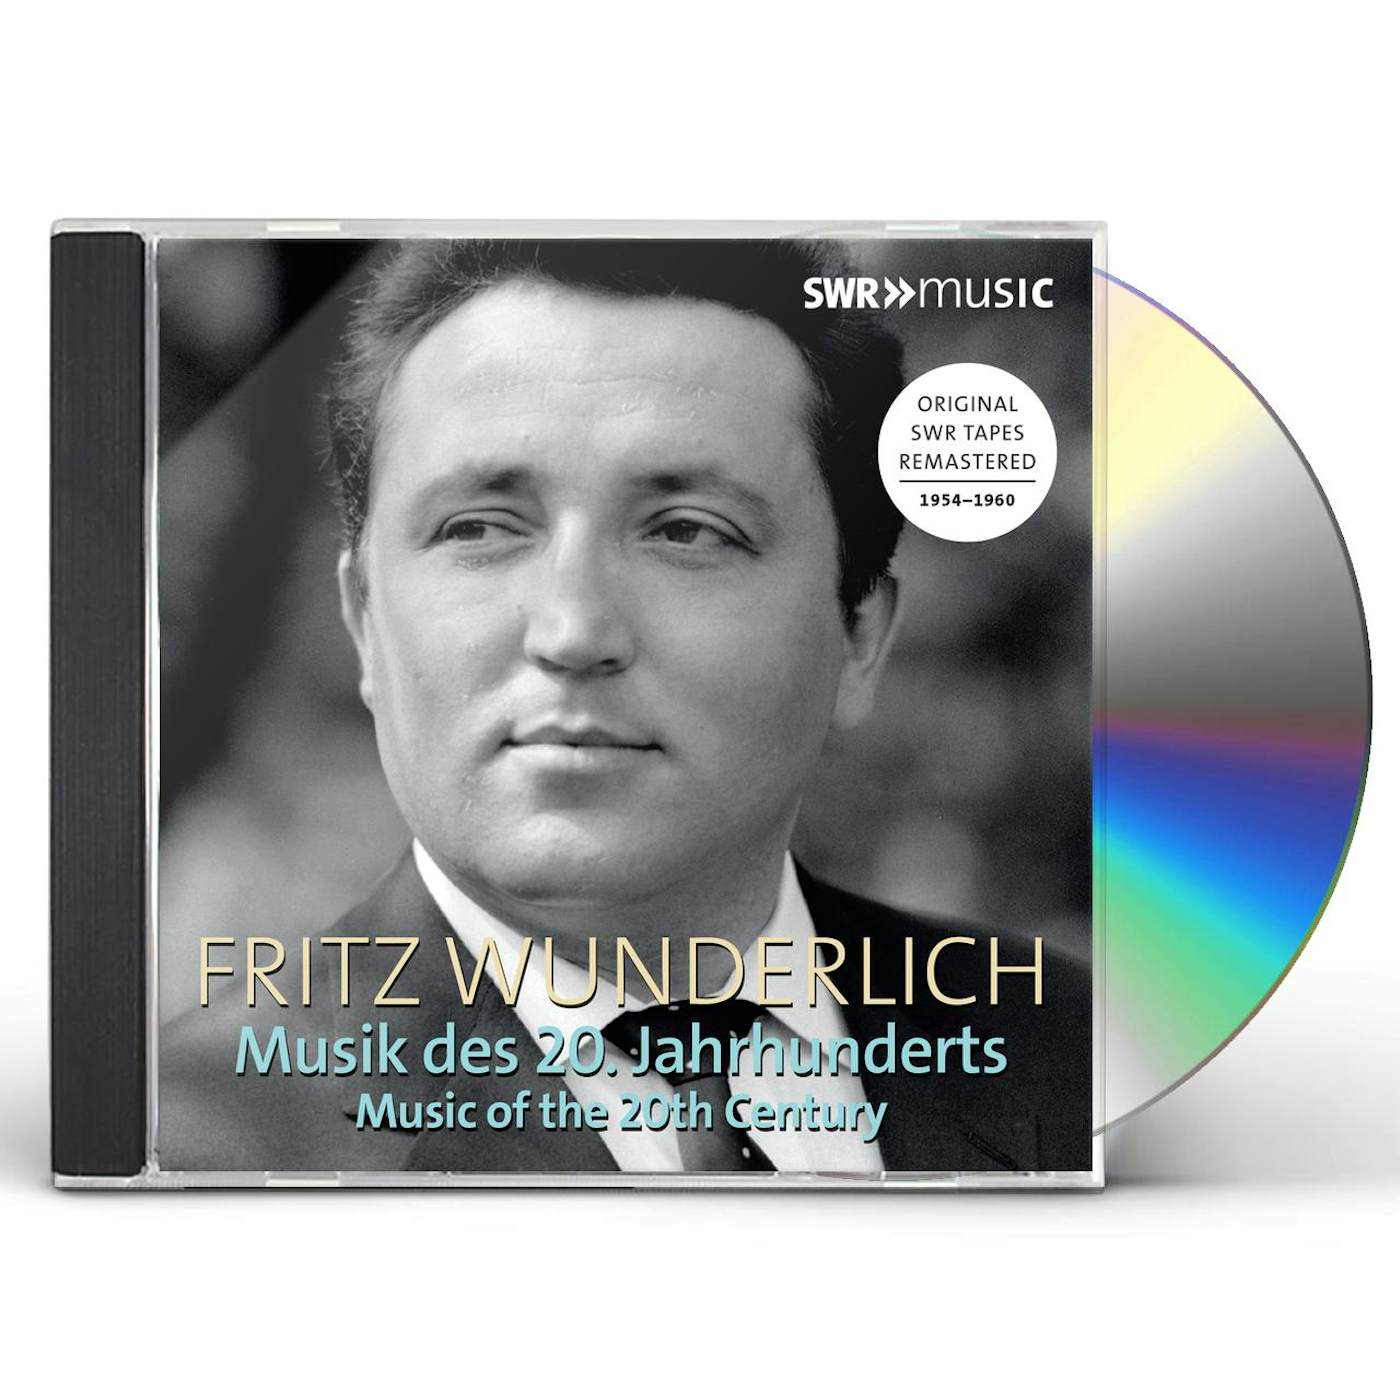 FRITZ WUNDERLICH: MUSIK DES 20 JAHRHUNDERTS CD